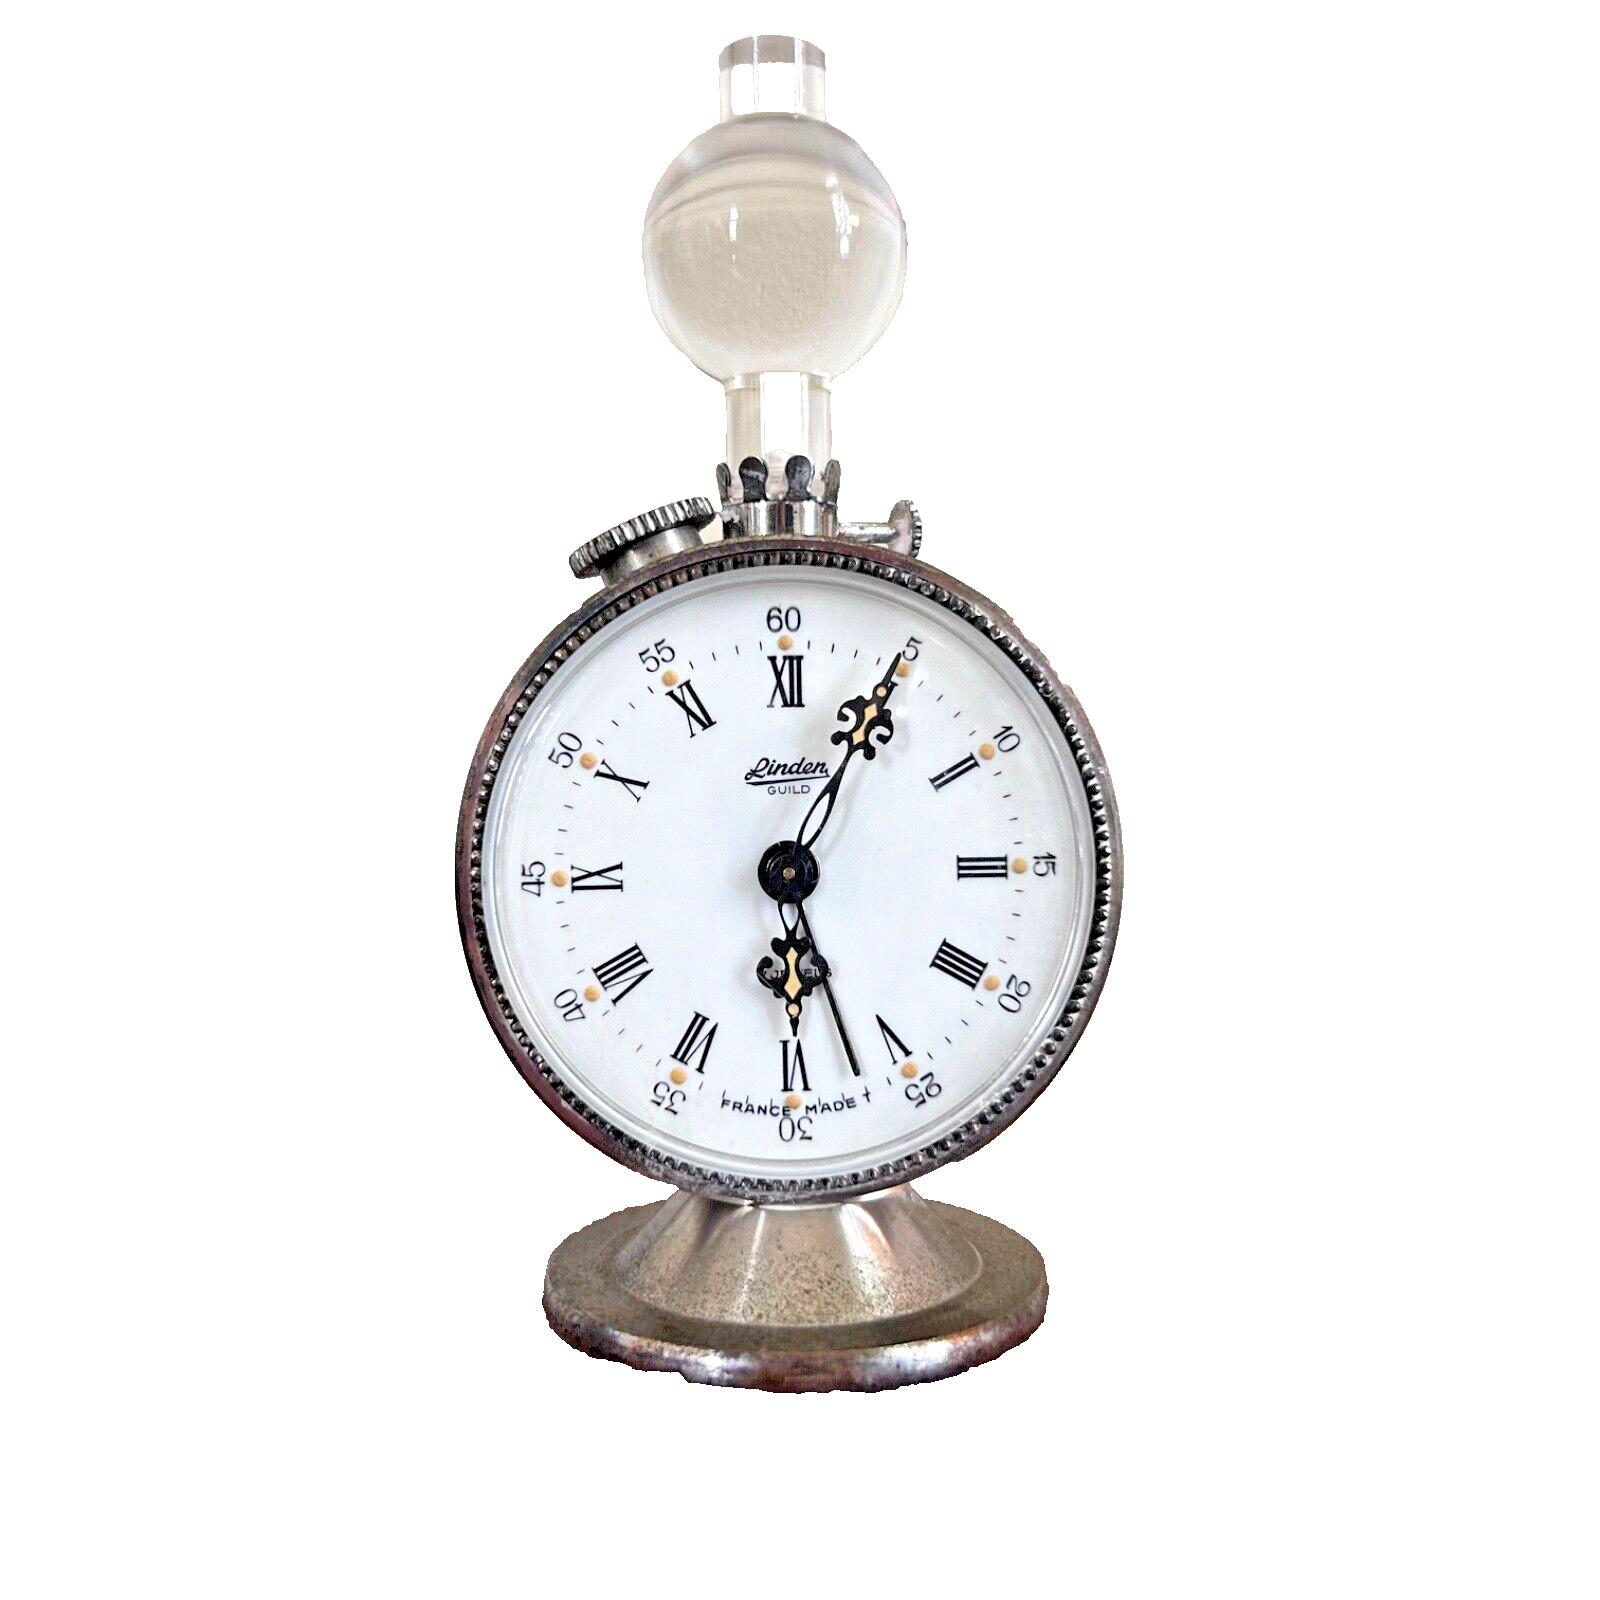 VTG Petite Linden Guild 8 Day 7 Jewel France Made Cuckoo Clock Co Alarm Works